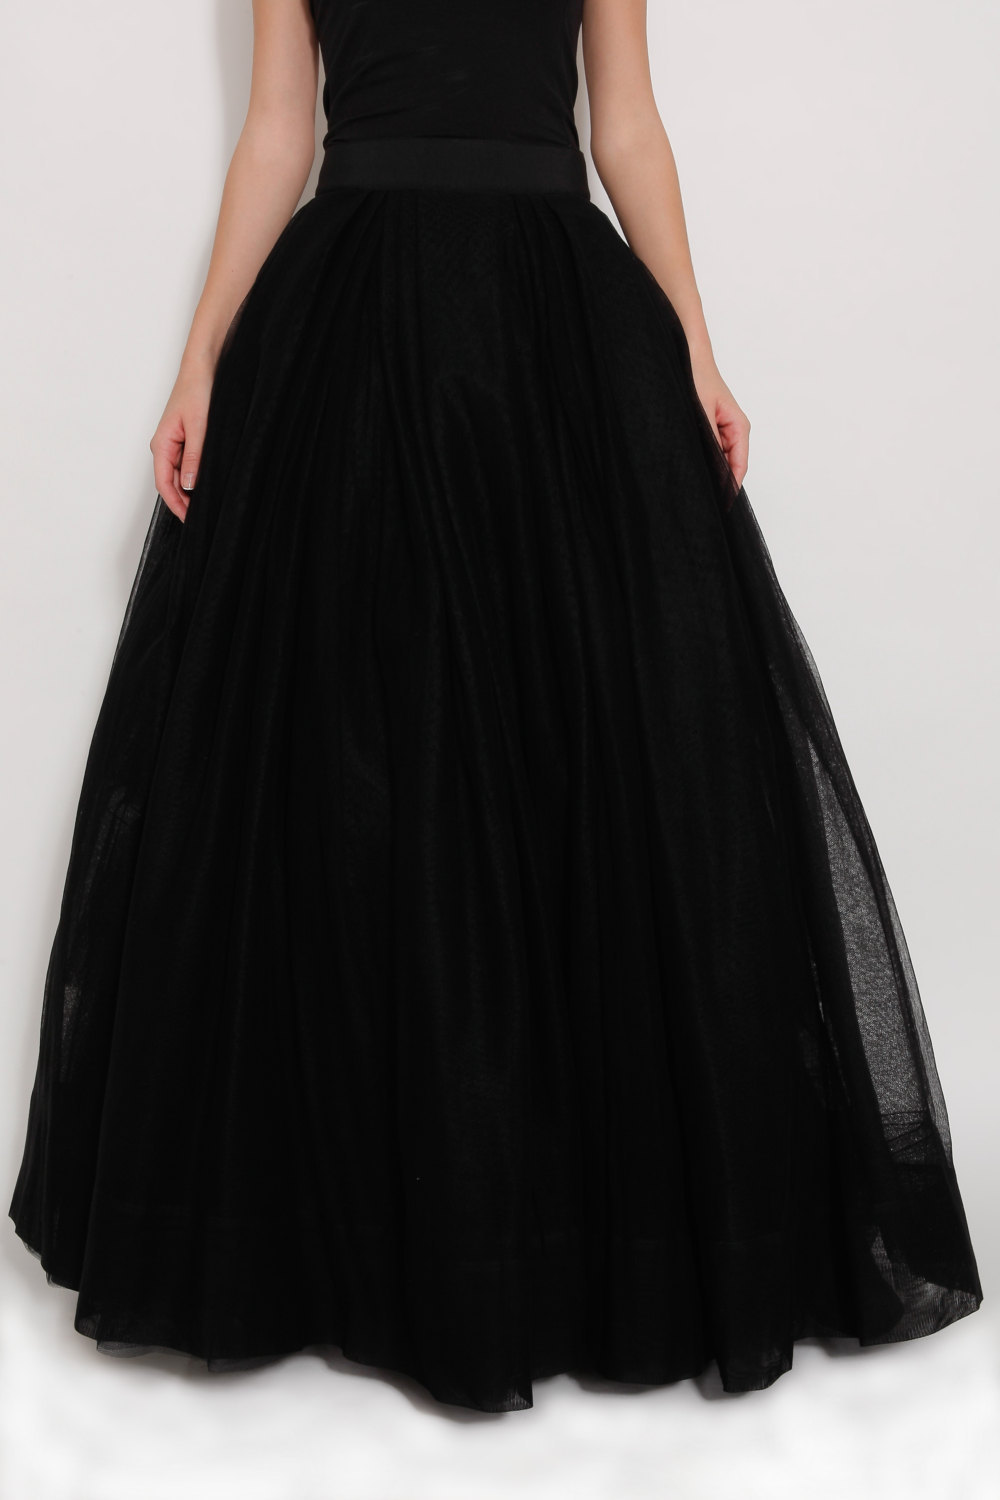 Black Tulle Full Length Bridesmaid Wedding Gown Long Skirt - Skirts